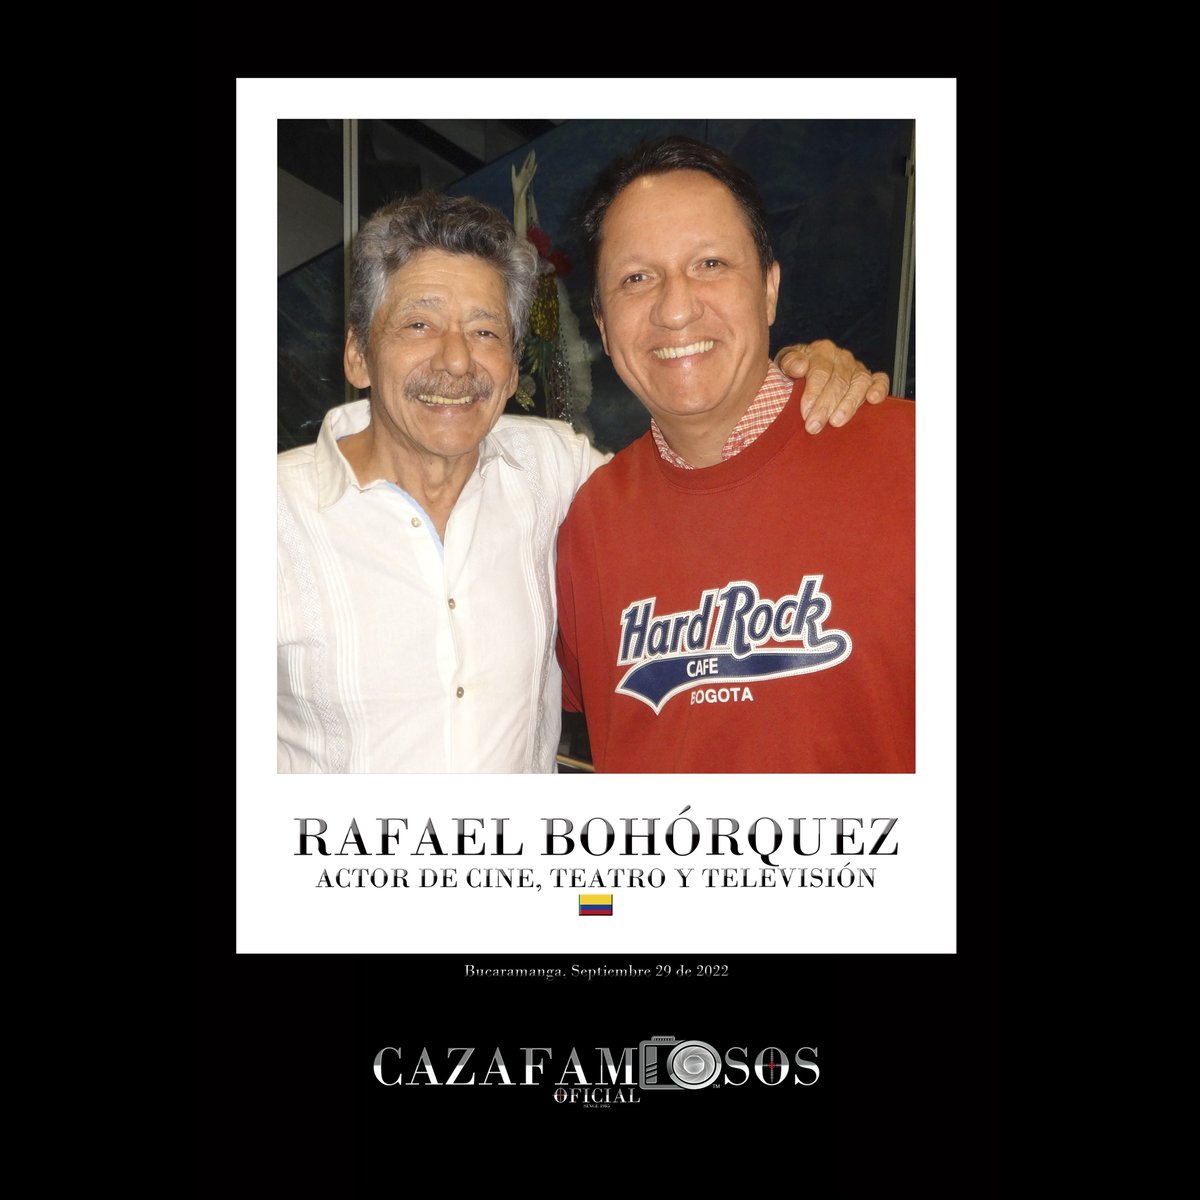 Rafael Bohórquez - Actor Colombiano de Cine, Teatro y Televisión. #rafaelbohorquez #caigoenlared #cazafamososoficial #cazafamosos #colombia #actorescolombianos